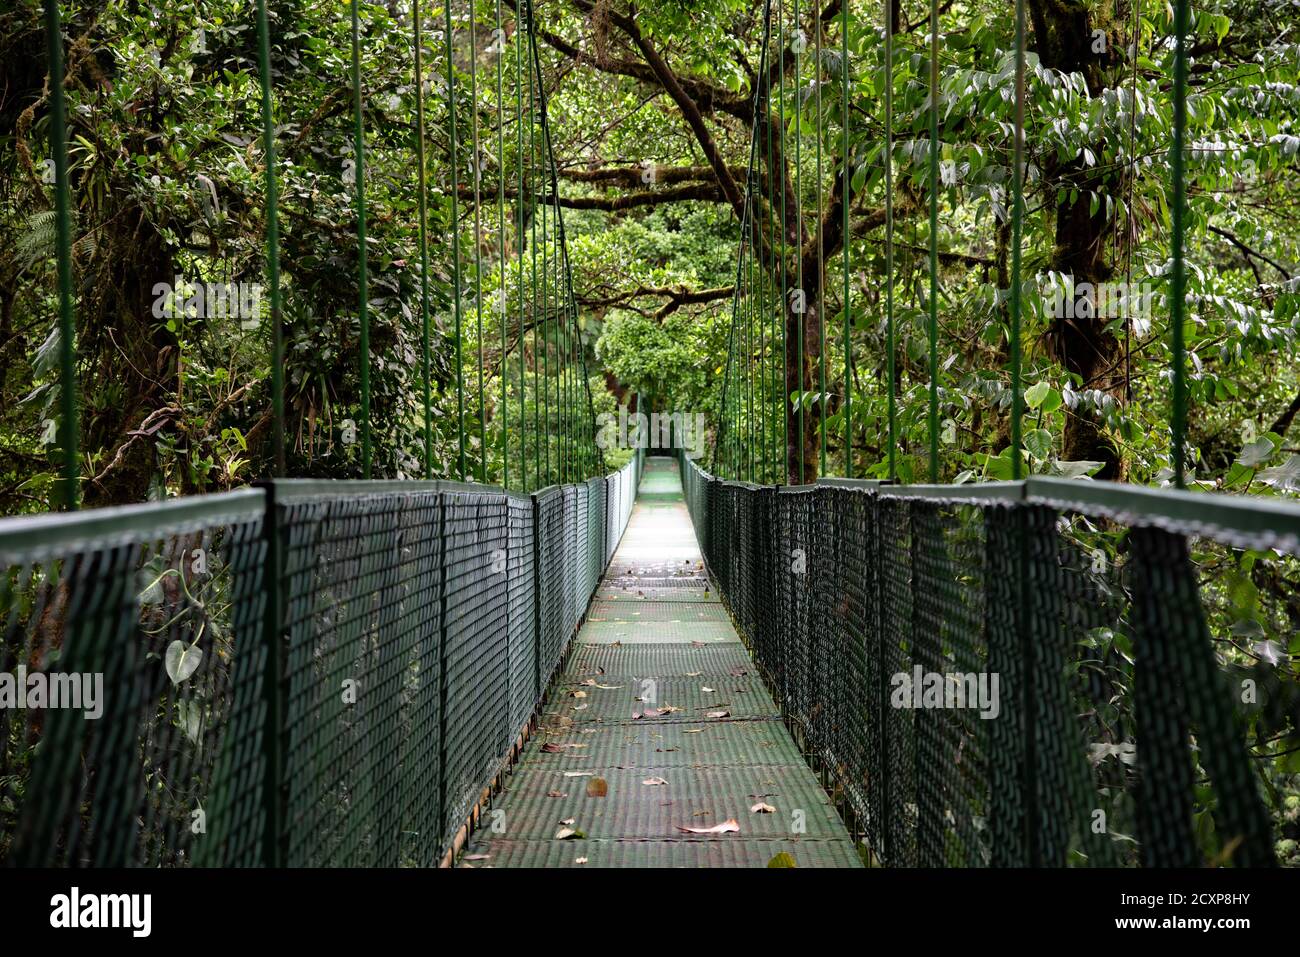 Monteverde Cloud Forest ponte sospeso, Costa Rica, giungla nuvolosa vuota, catena ponte sospeso sopra e attraverso la umida foresta pluviale Foto Stock